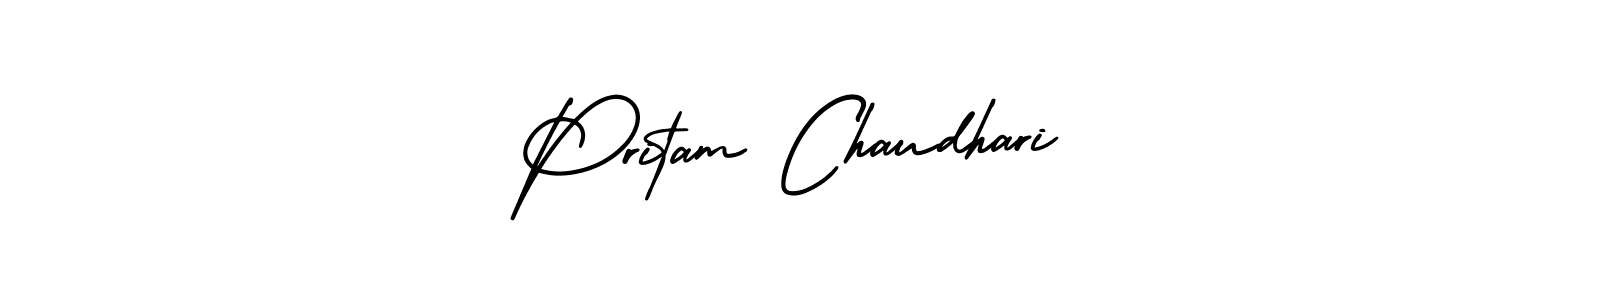 88+ Pritam Chaudhari Name Signature Style Ideas | Great eSign